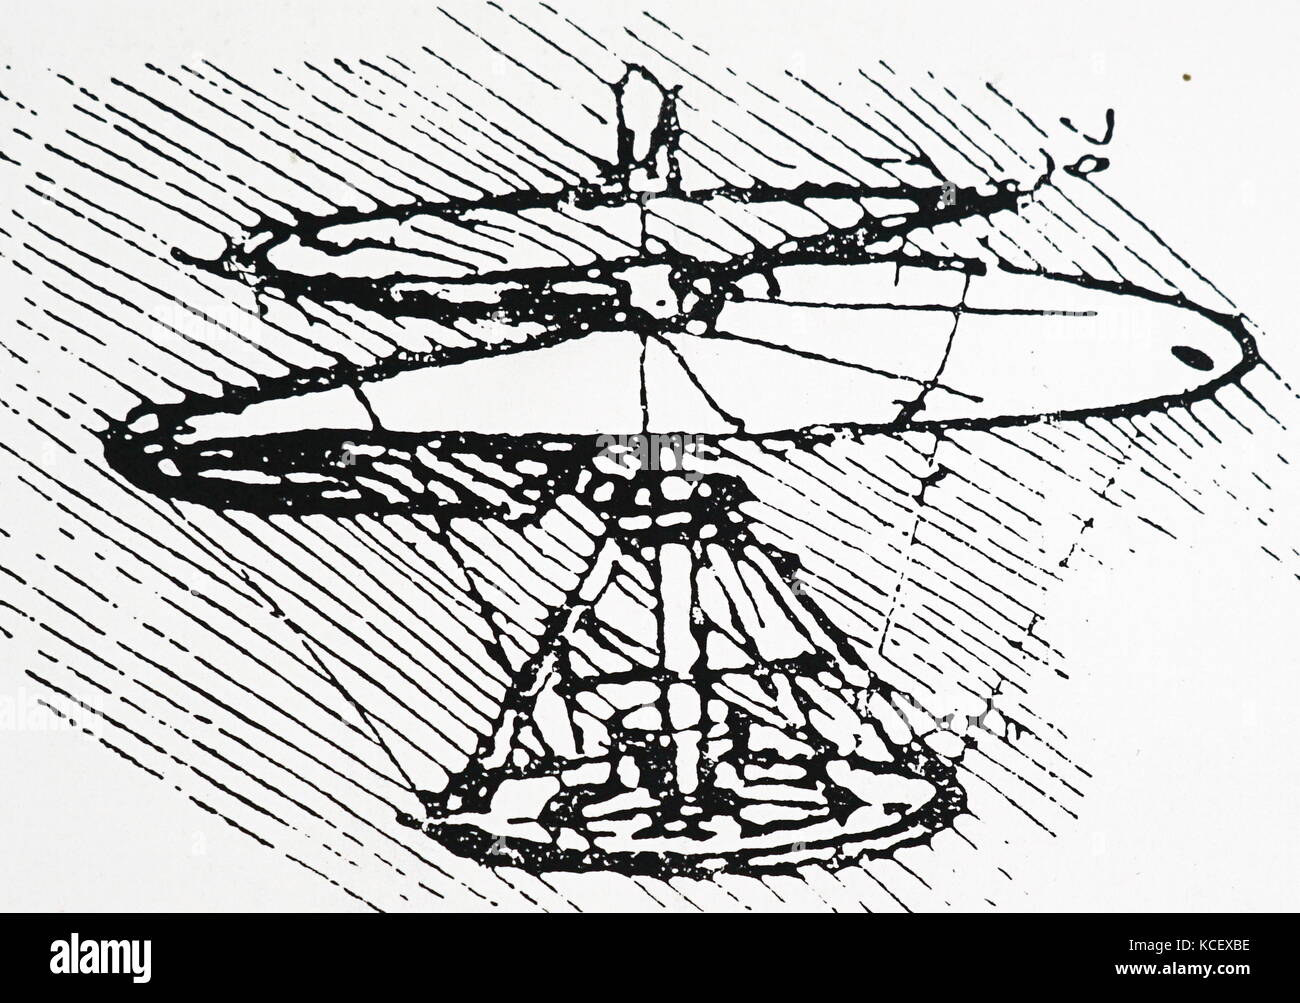 Gravur Darstellung von Leonardo da Vinci Archimedischen Schraube  Hubschrauber. Leonardo da Vinci (1452-1519), einem italienischen  Universalgelehrten, Künstler und Erfinder. Vom 15. Jahrhundert  Stockfotografie - Alamy